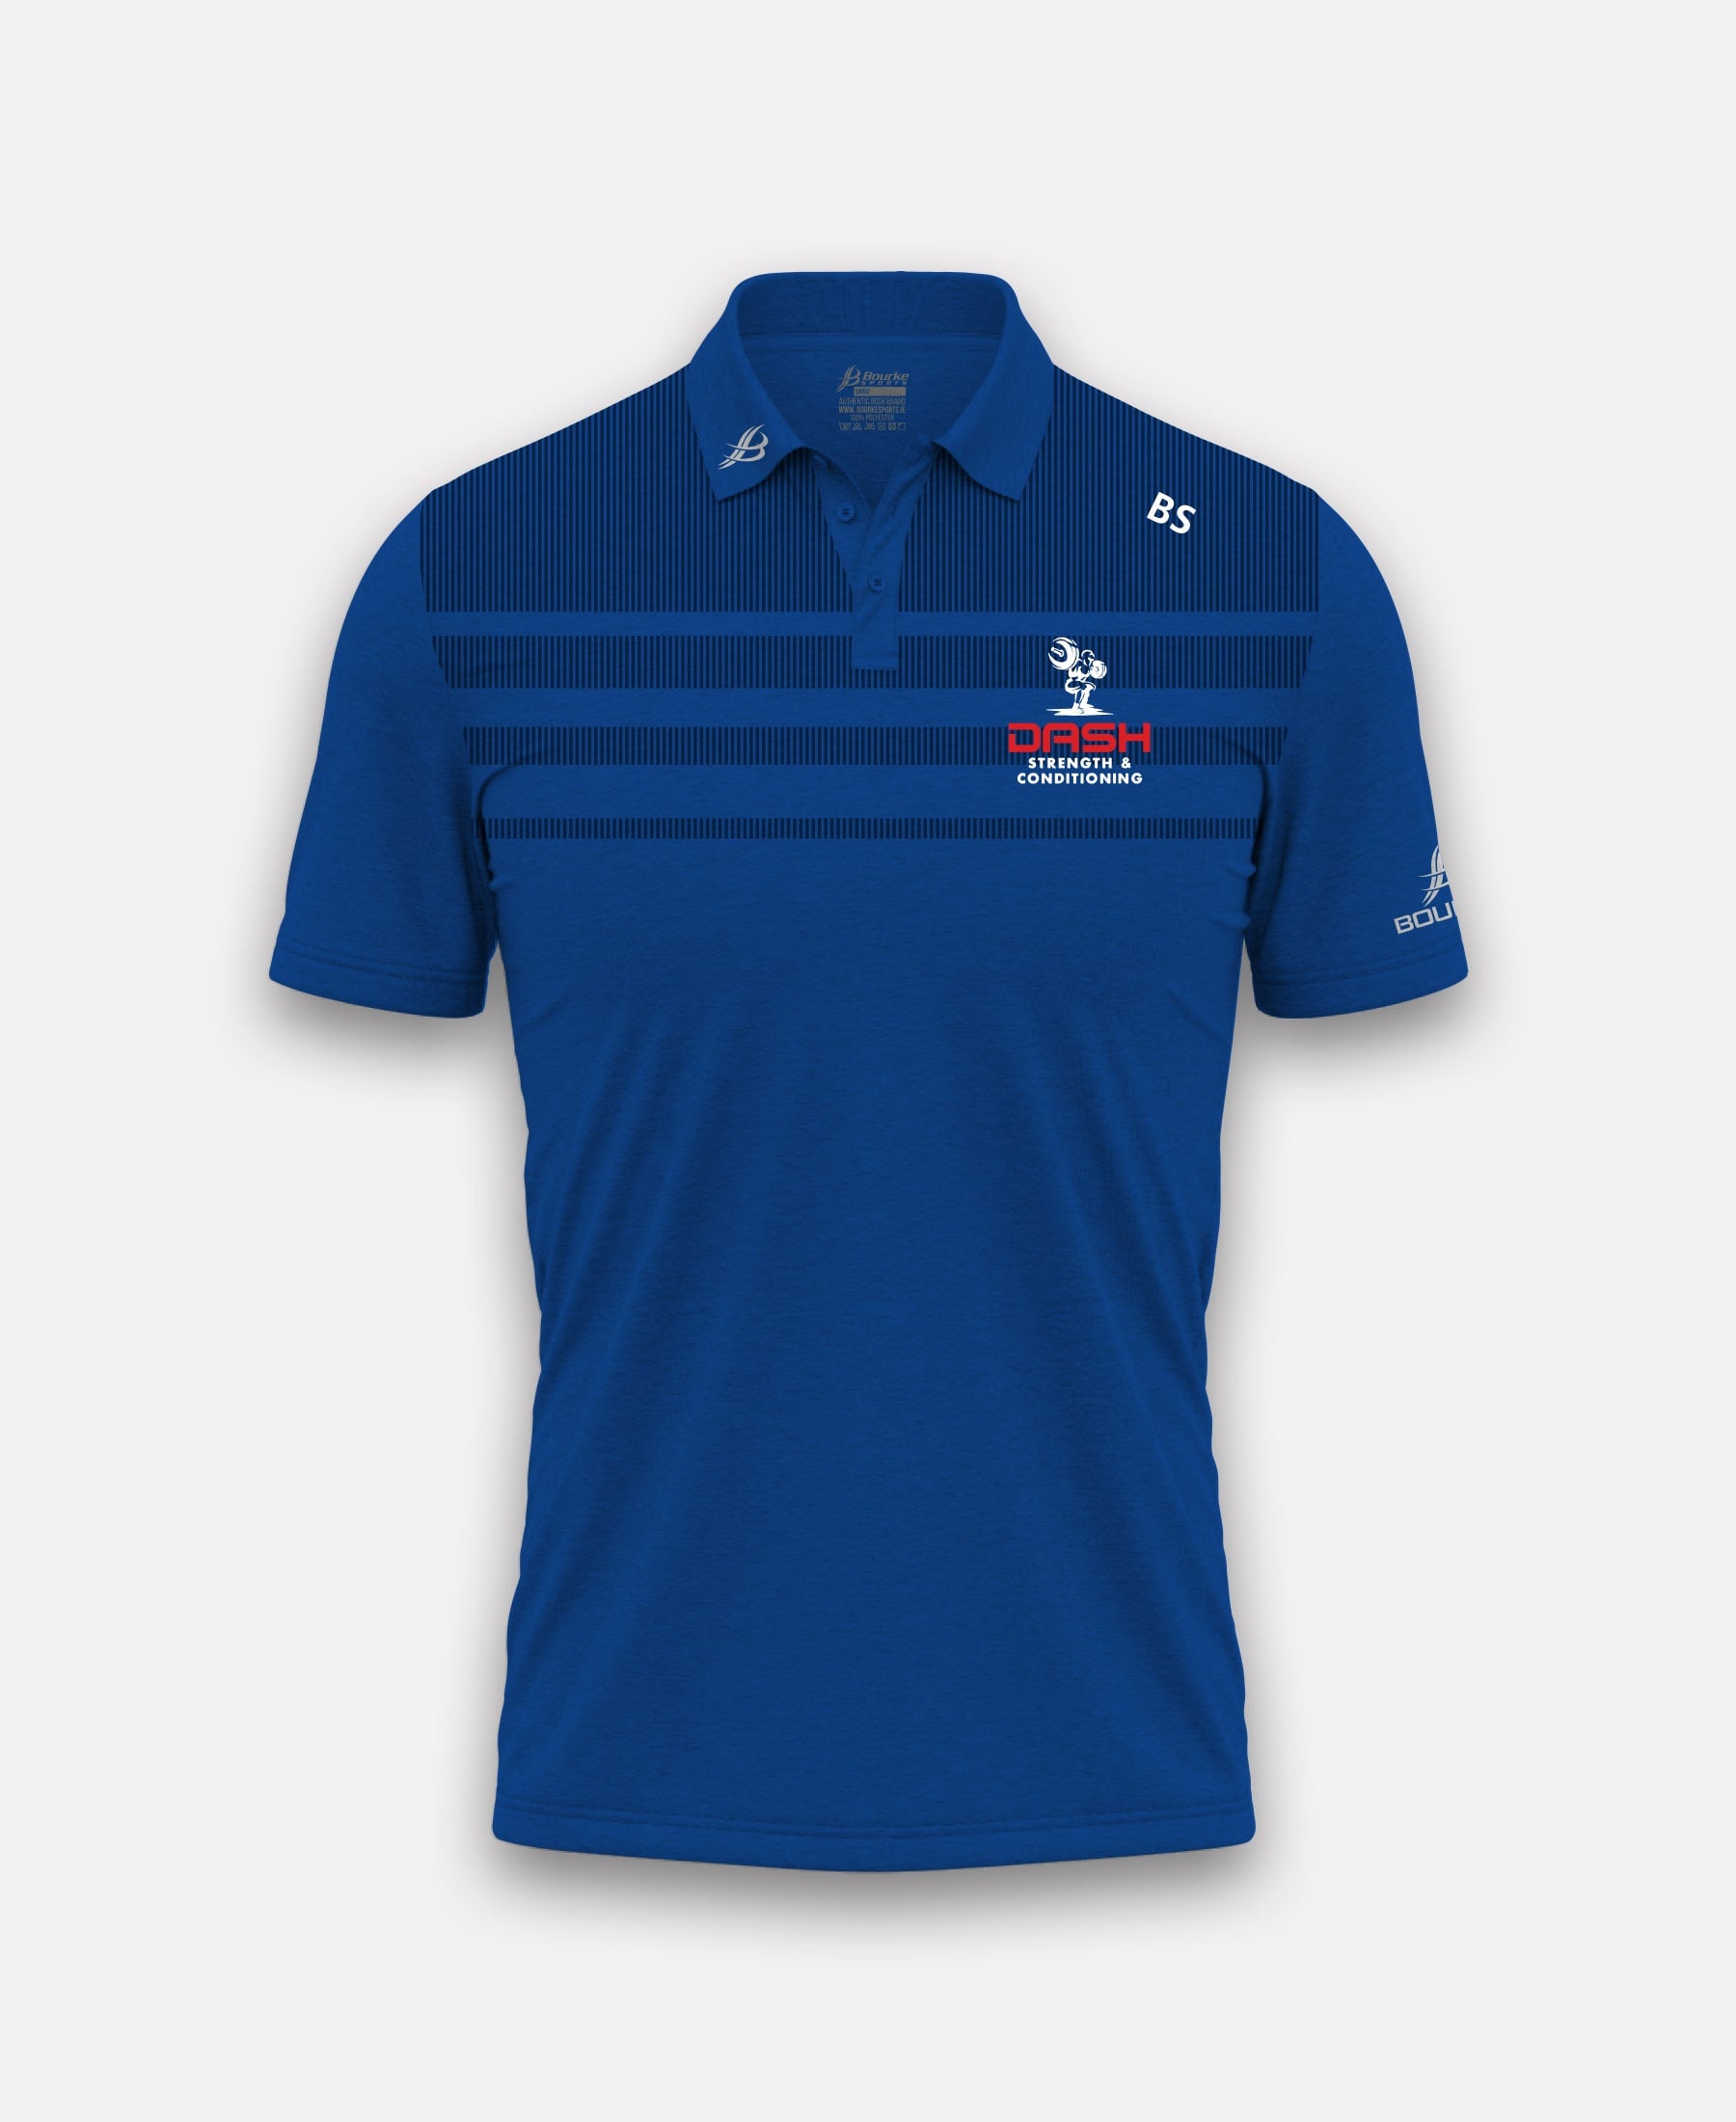 DASH Strength & Conditioning TACA Polo Shirt (Blue)